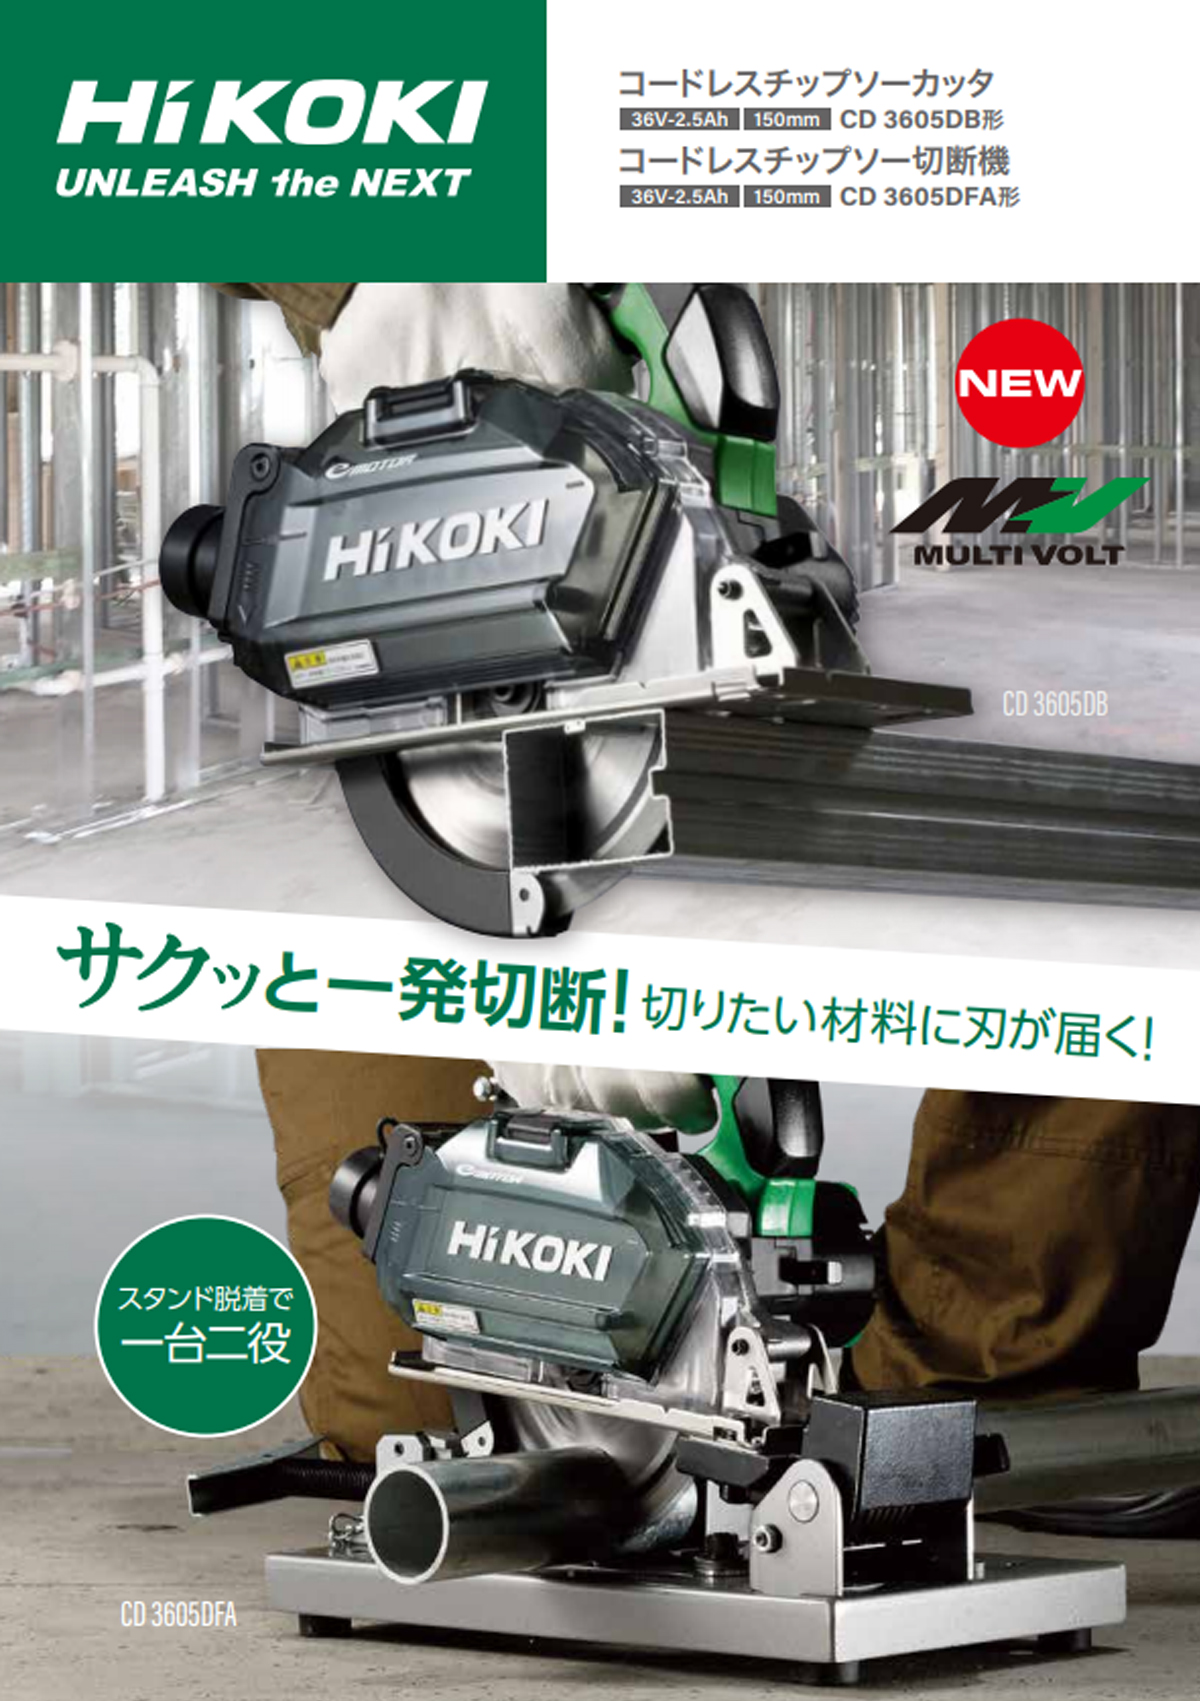 休日 HiKOKI ハイコーキ コードレスチップソーカッター マルチボルトシリーズ CD3605DA XP